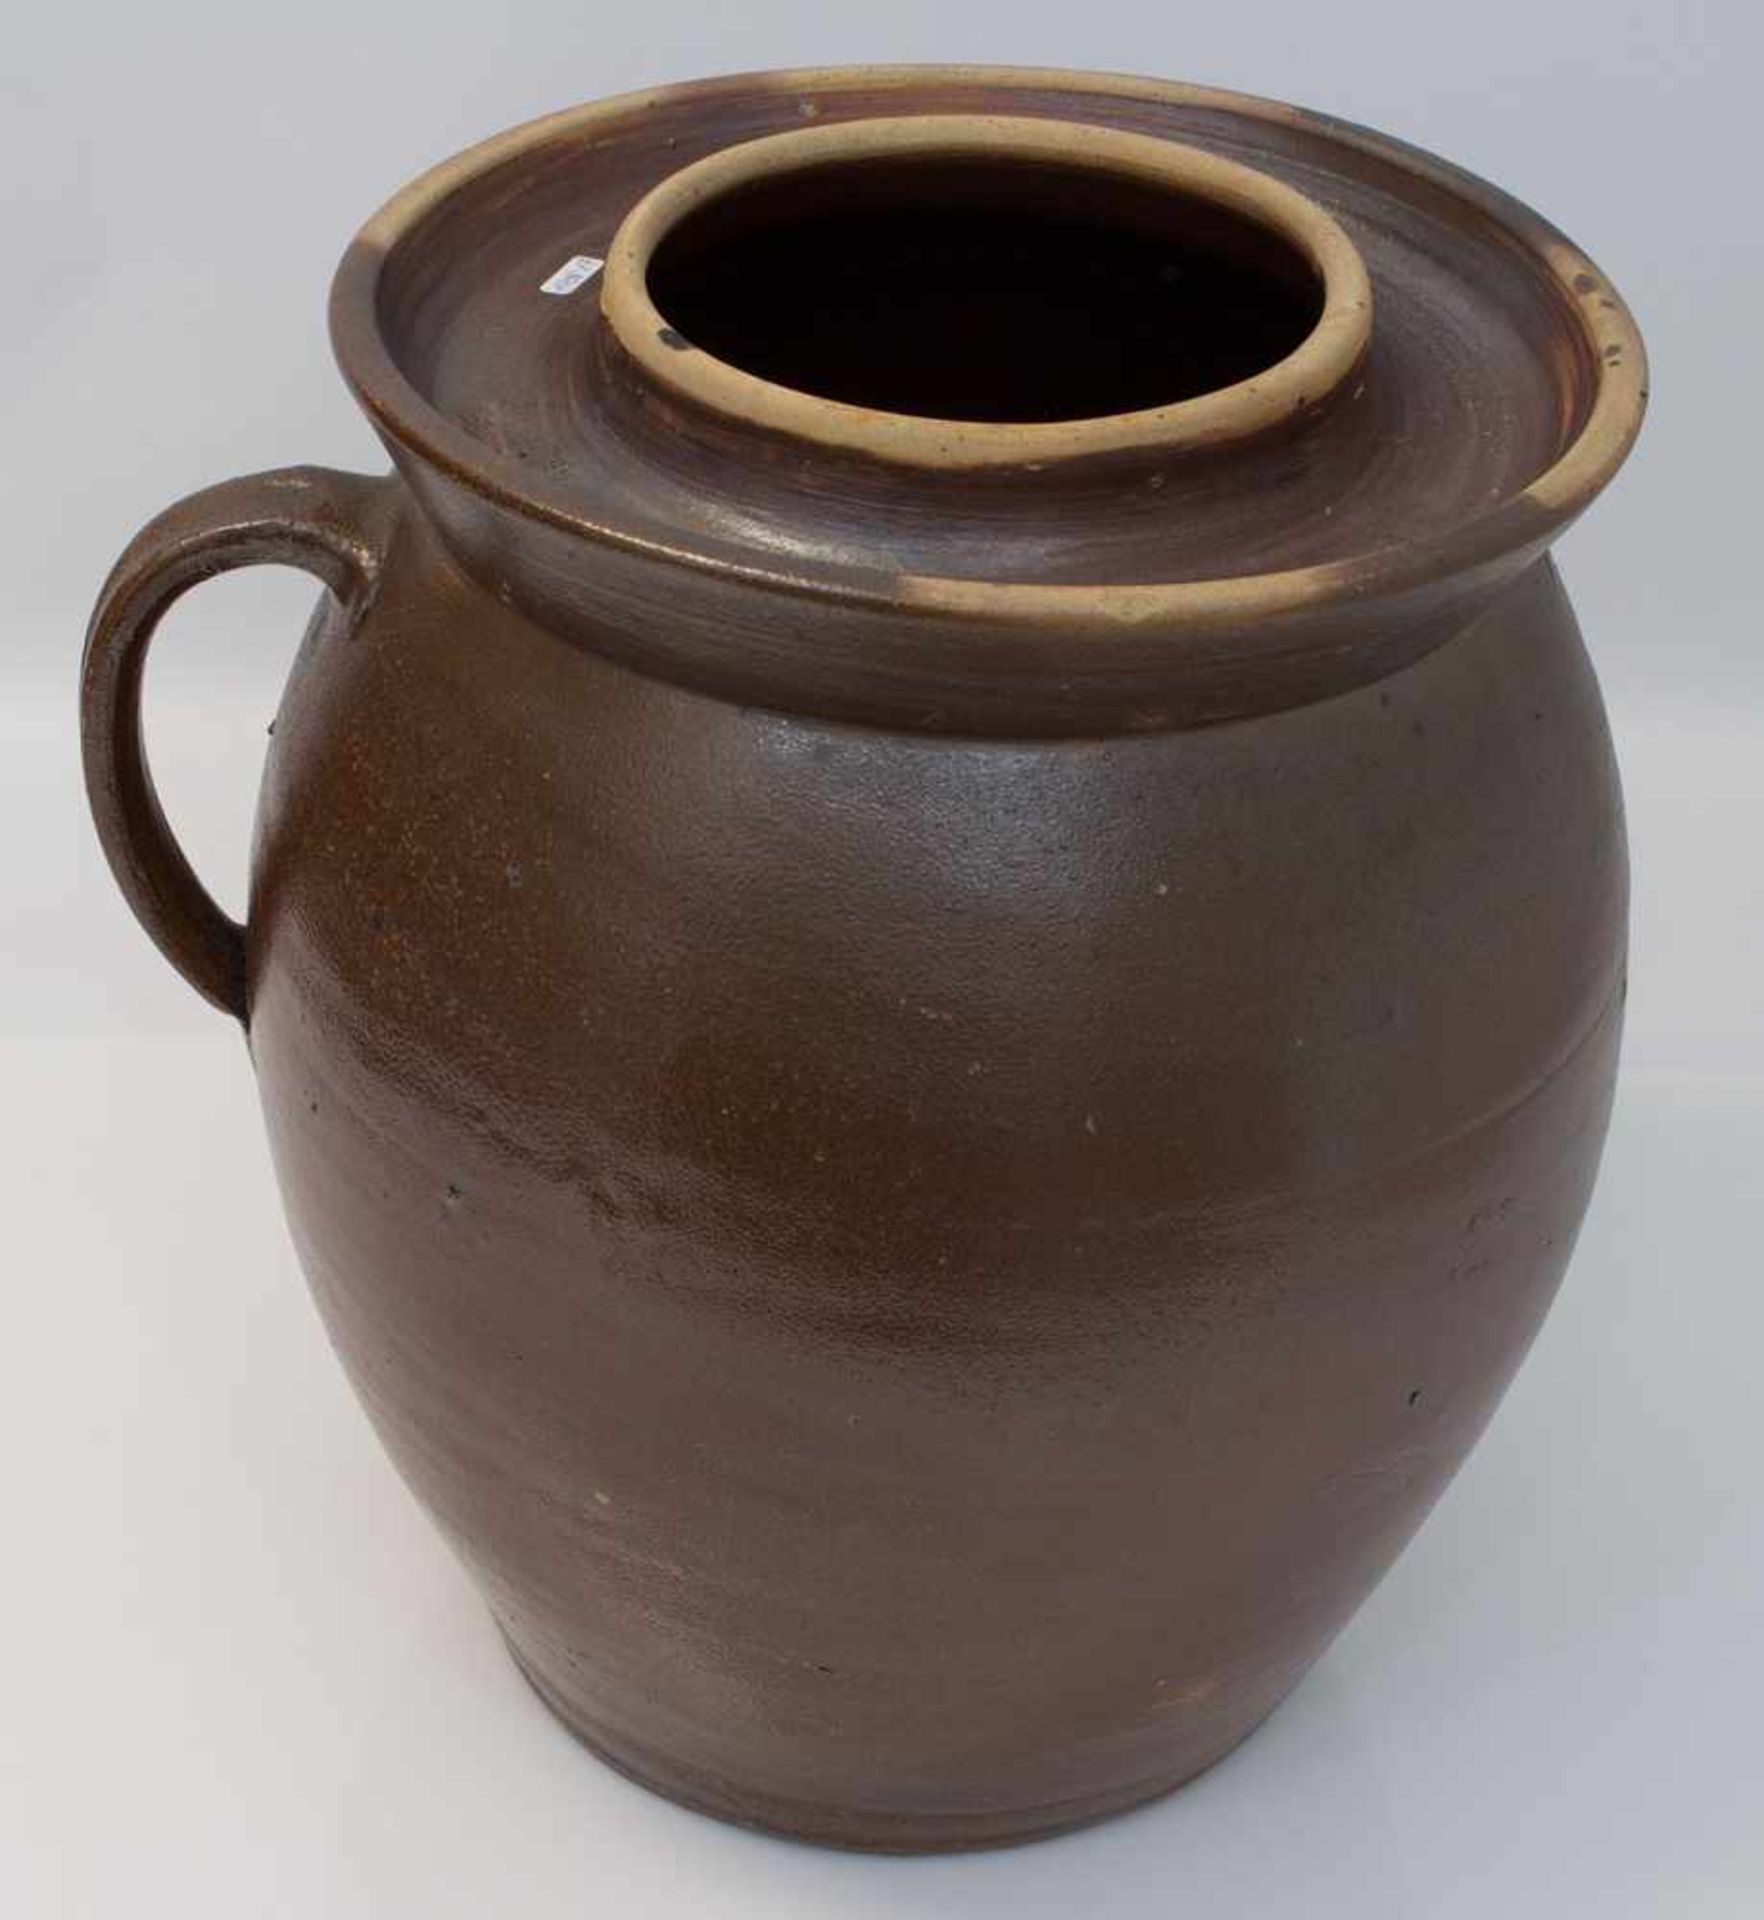 Grosser Gurkentopf Gärtopf, braun glasierte Keramik mit einem Henkel, Deckel fehlt, H. 38 cm